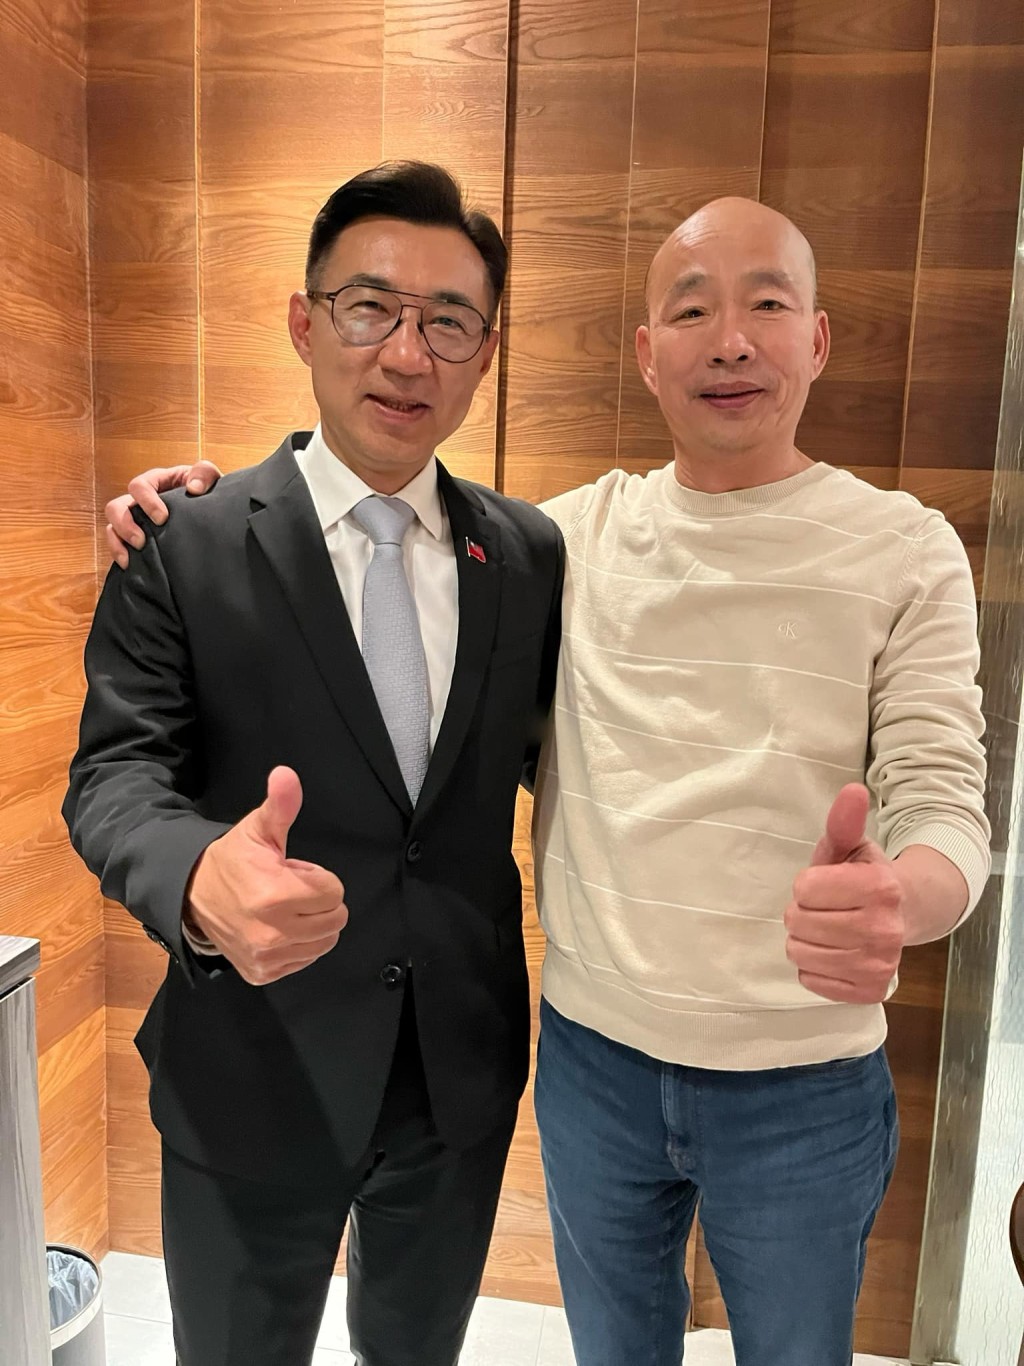 韓國瑜和江啟臣代表國民黨競逐台灣立法院正副院長。Facebook